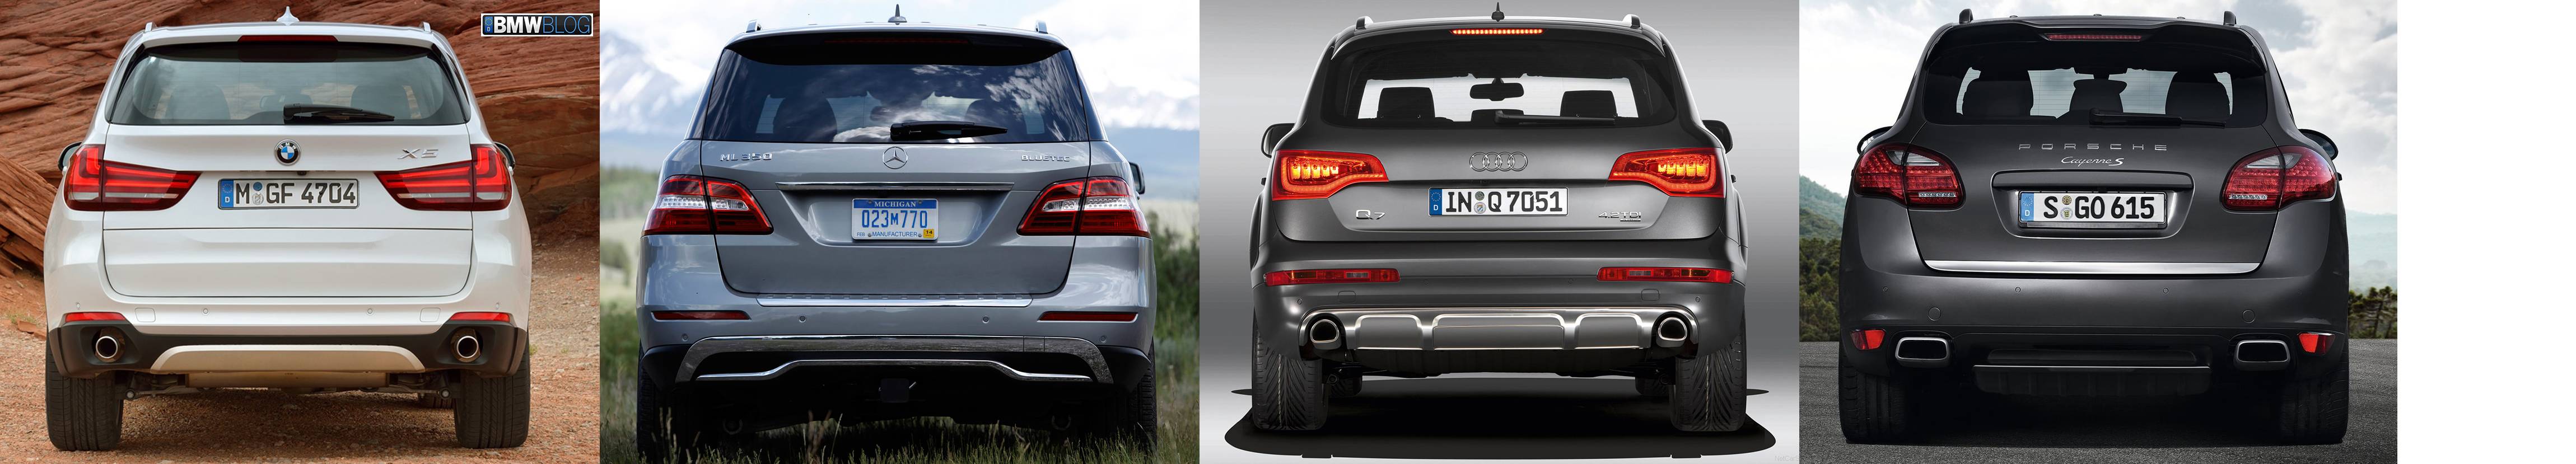 Немецкое противостояние: BMW X5 II против Audi Q7 I